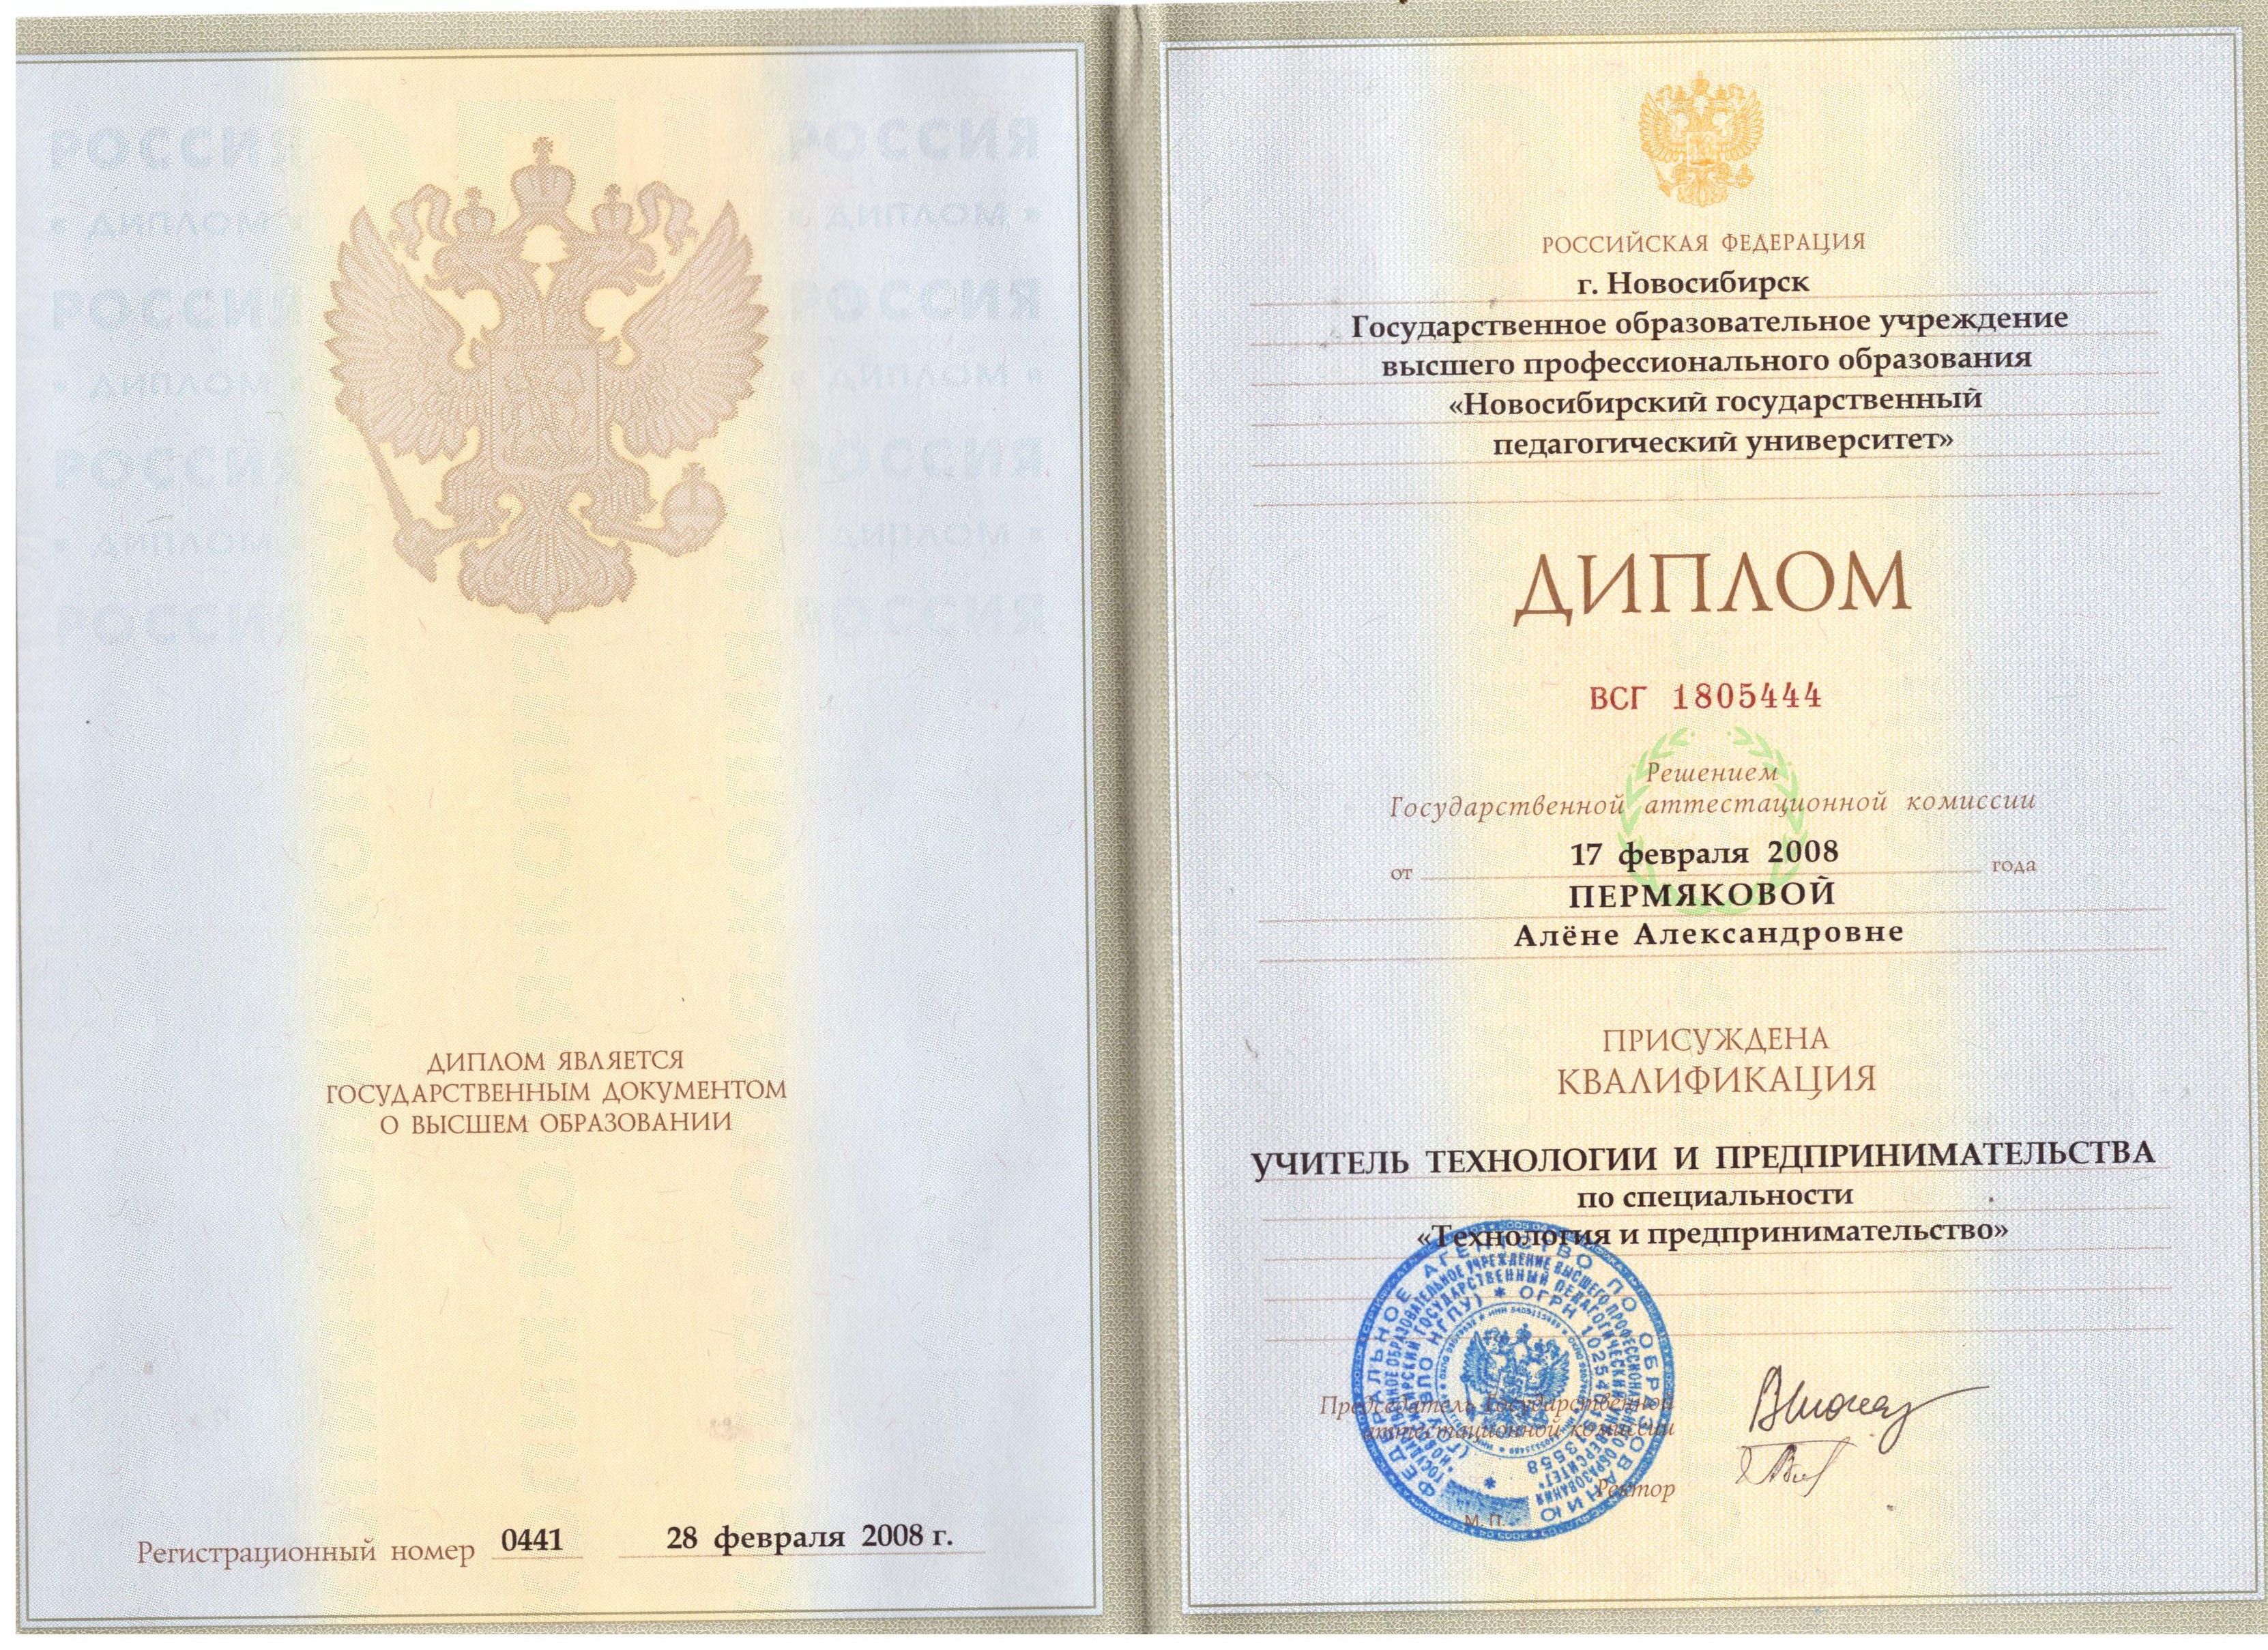 Сайт московские документы